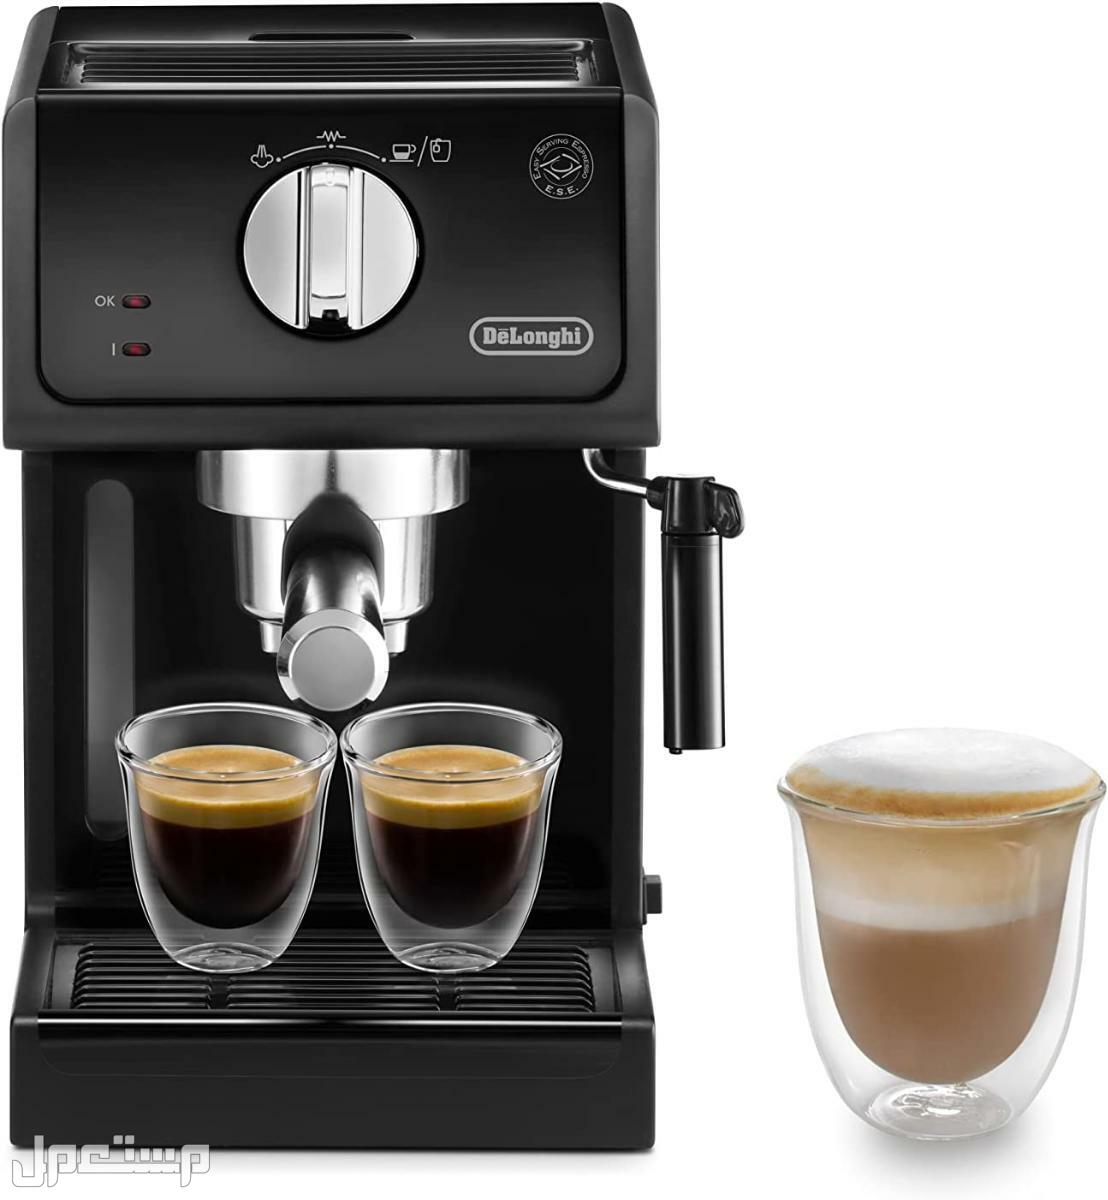 عيوب ومميزات ومواصفات وسعر ماكينة قهوة ديلونجى ديديكا في مصر لماذا عليك شراء ماكينة قهوة ديلونجي ديديكا ؟